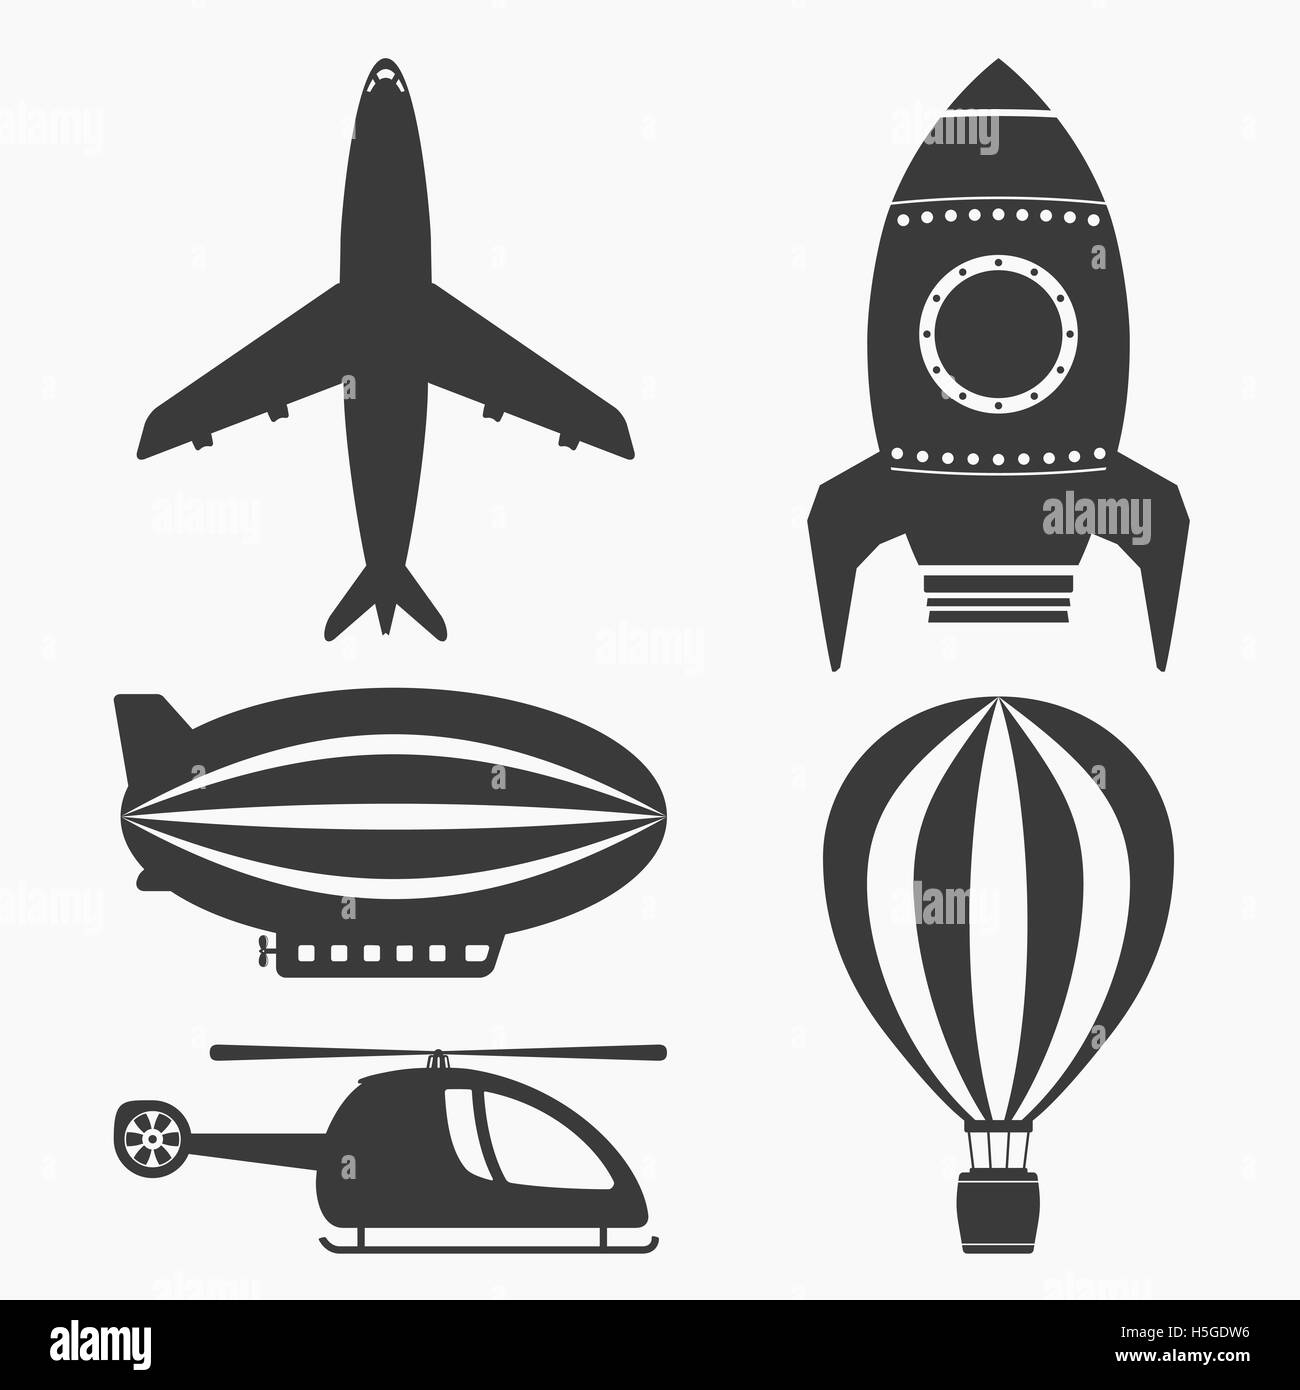 Luft Verkehr Icons Set, Hubschrauber, Flugzeug, Heißluft-Ballon, Luftschiff und Rakete Stockfoto